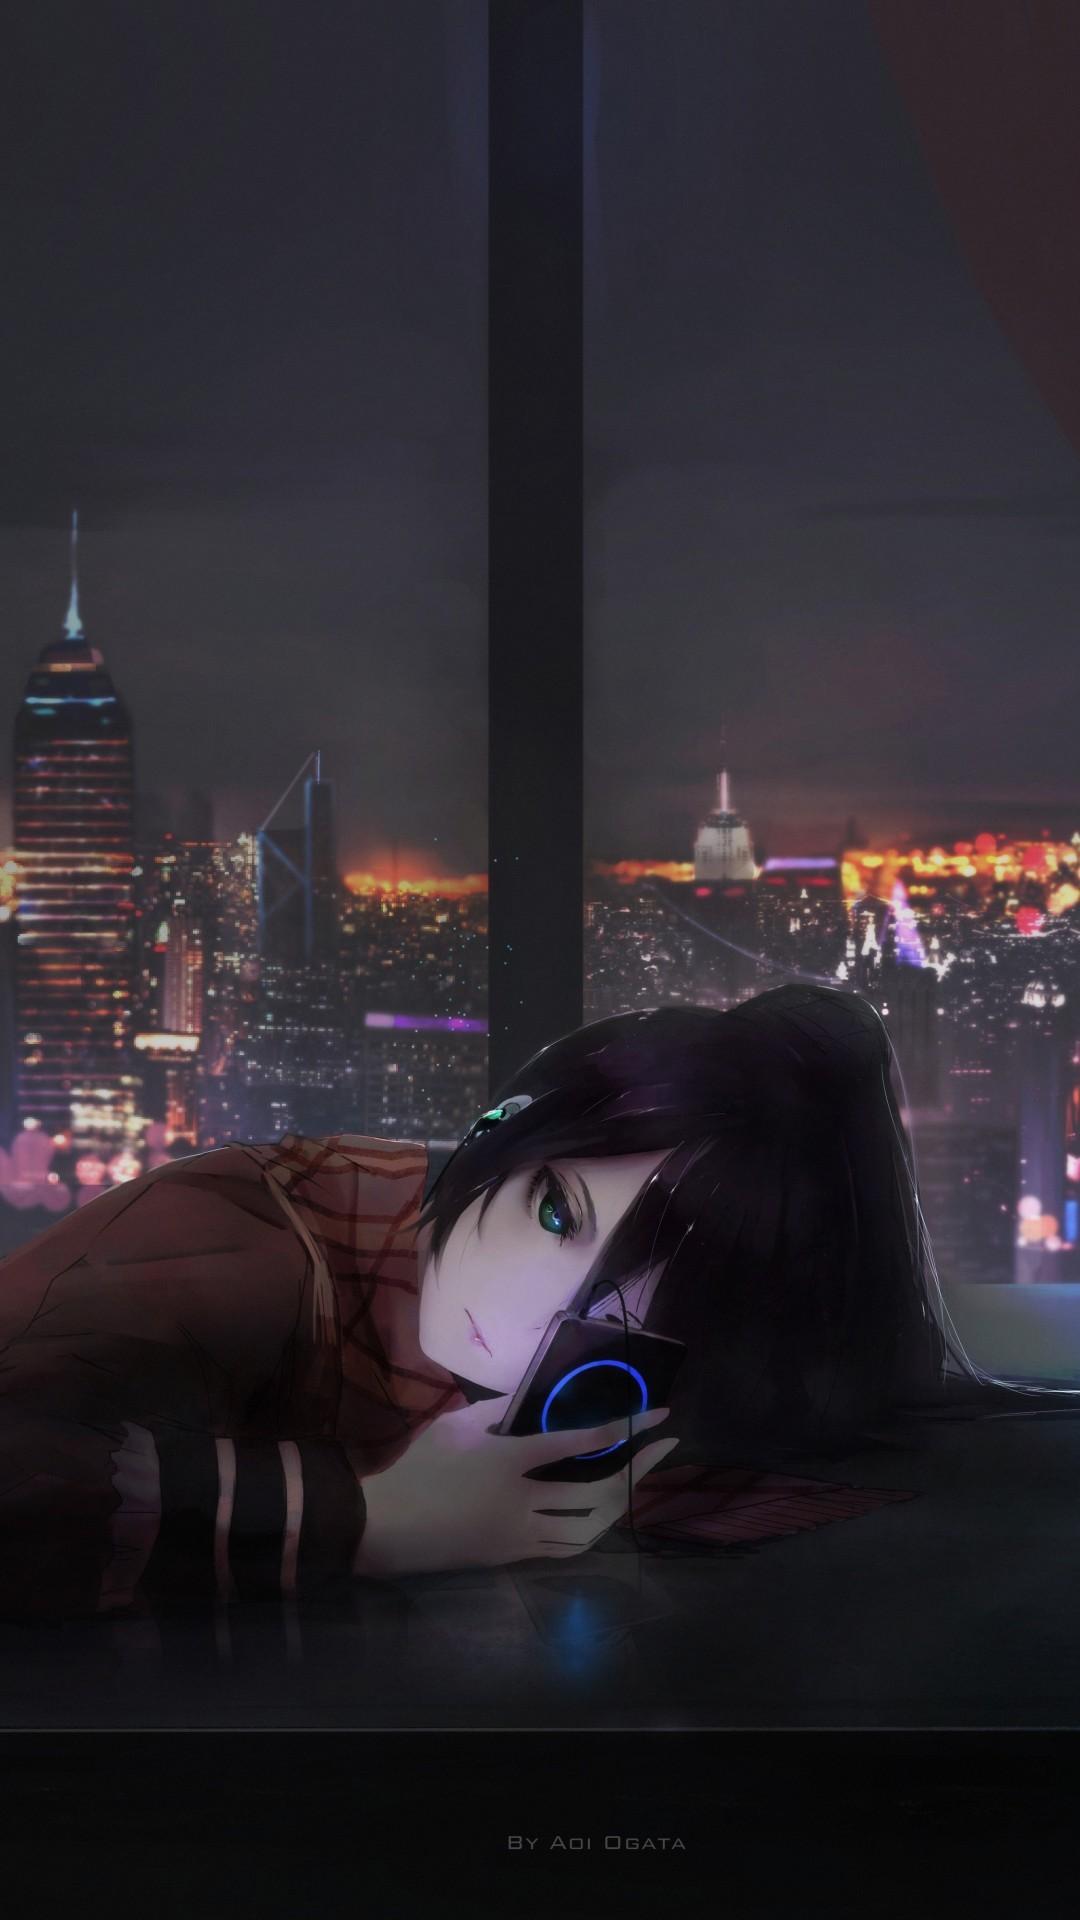 Sad Aesthetic Anime Girl Wallpapers - Top Những Hình Ảnh Đẹp